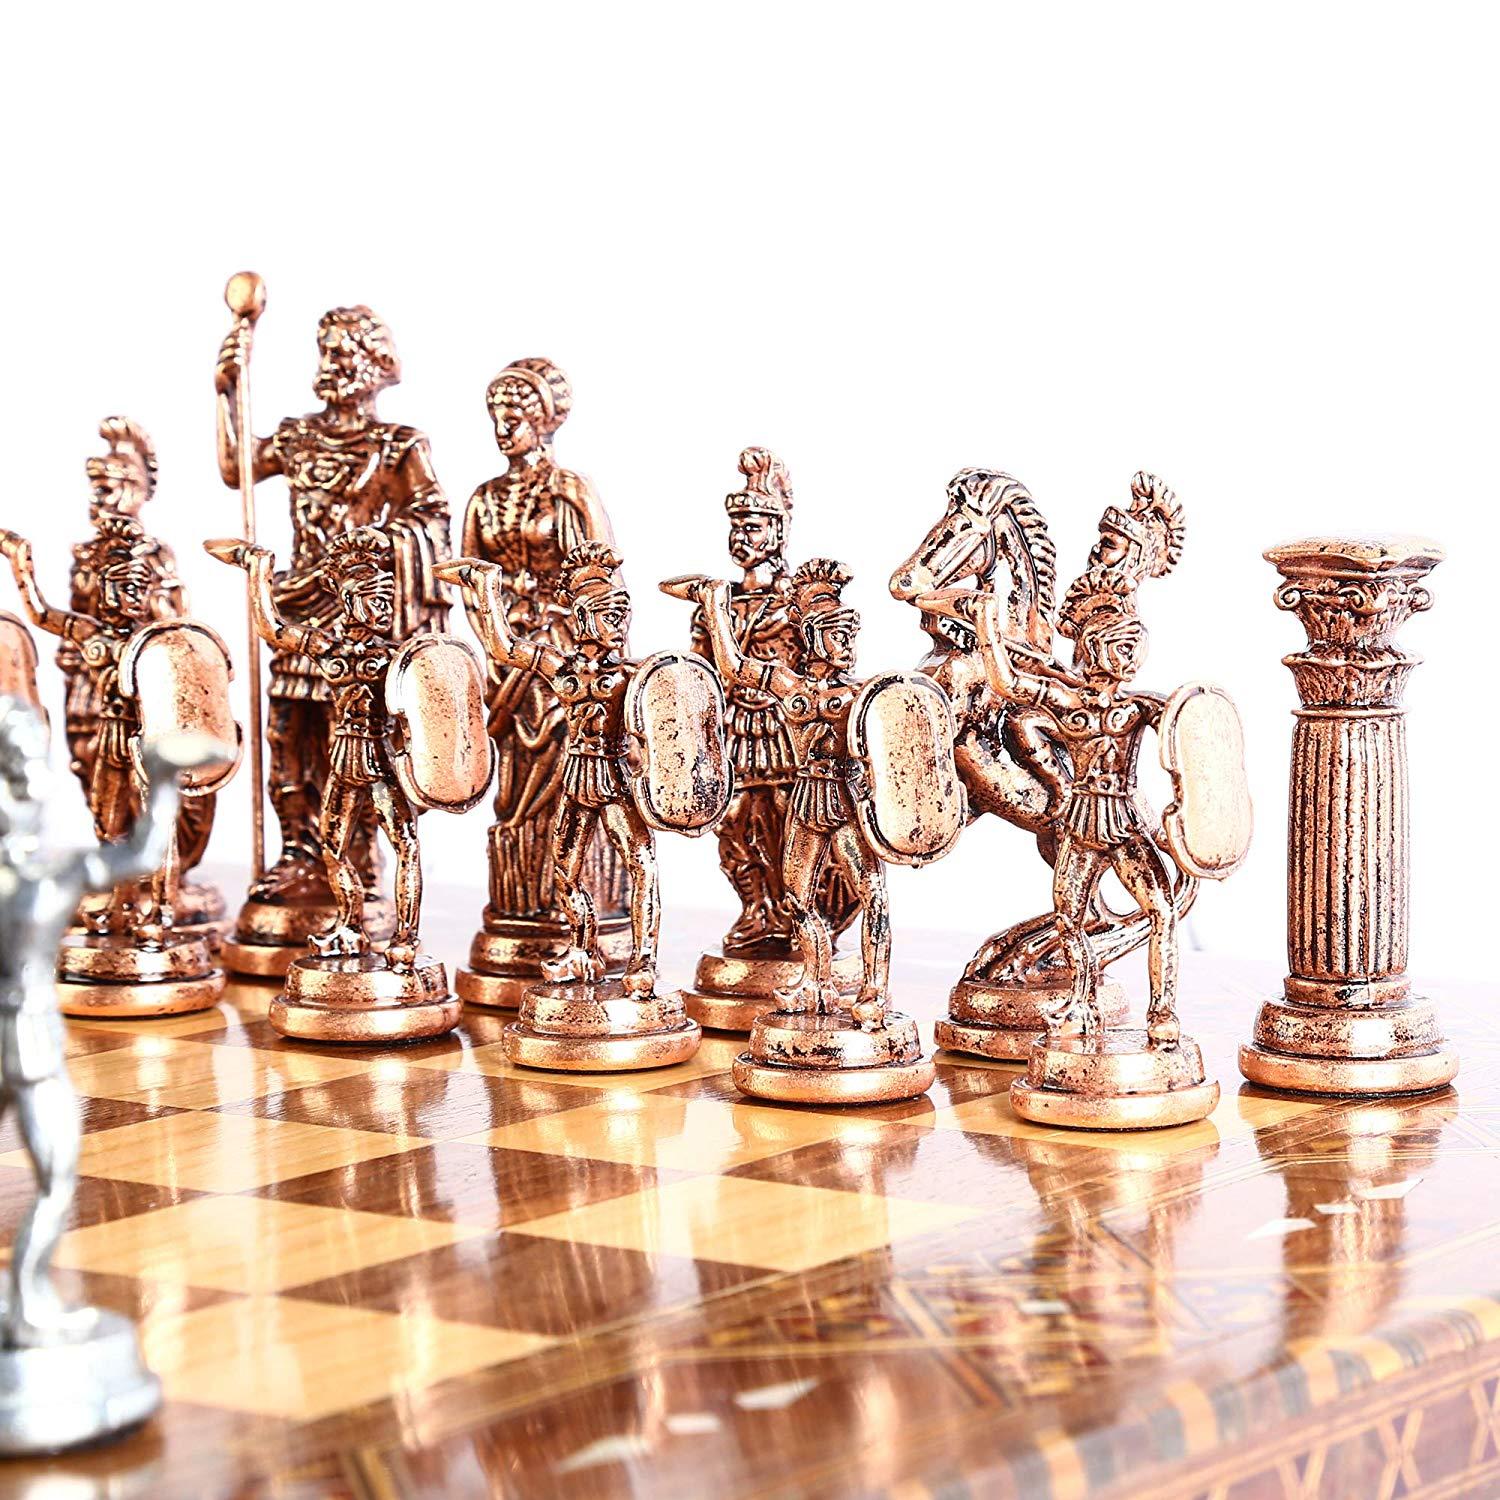 Изображение товара: (Только шахматные фигуры), старинная медная римская фигура, металлические шахматные фигуры ручной работы, большой размер 11 см (доска не входит в комплект)